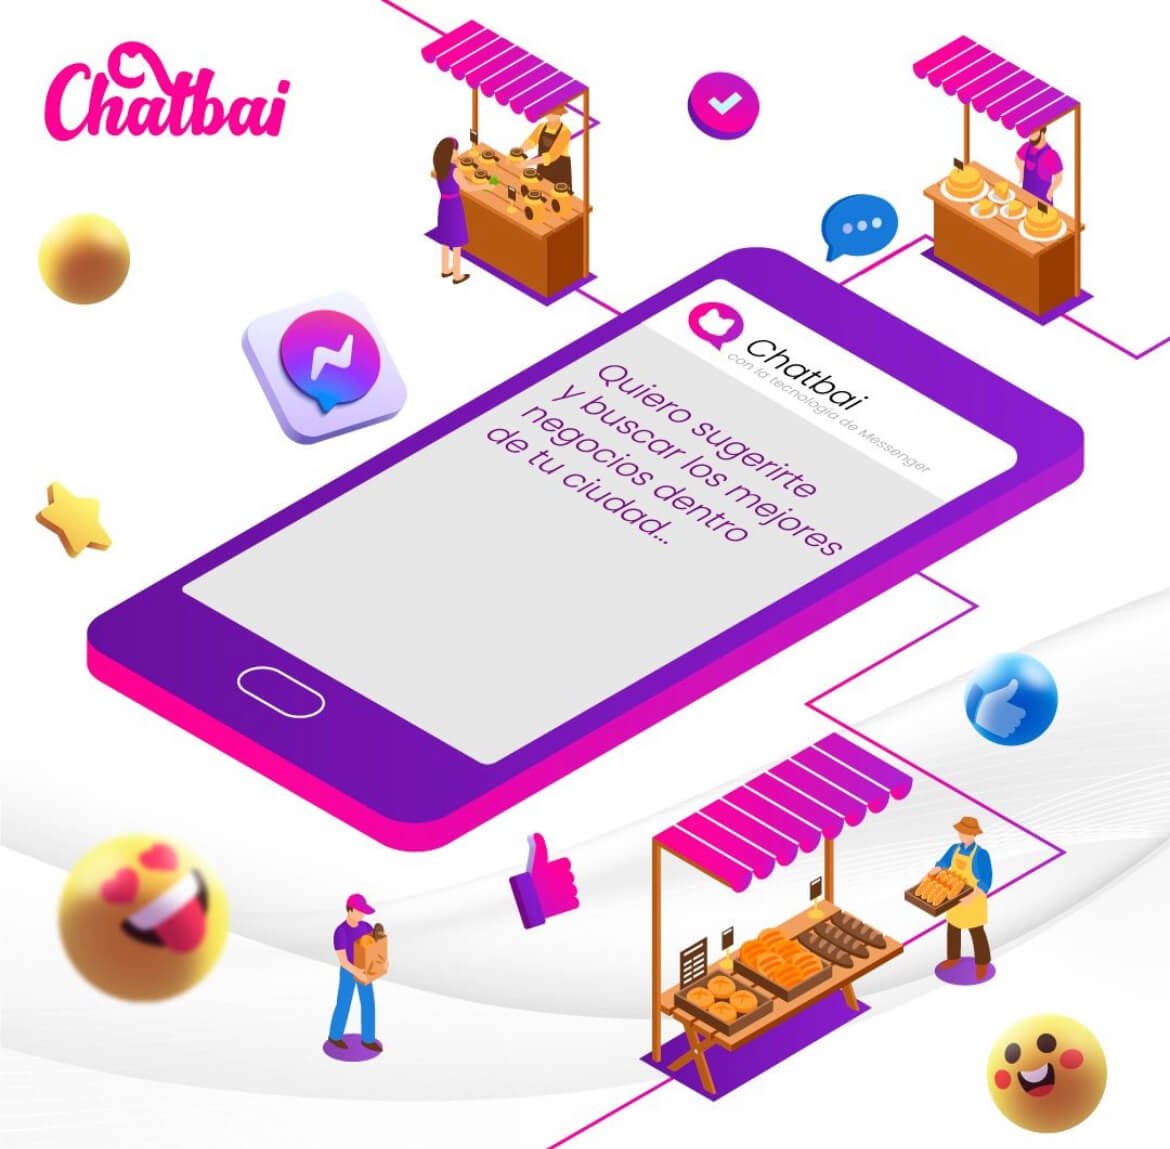 Chatbai Product Manager Camilo Mendieta